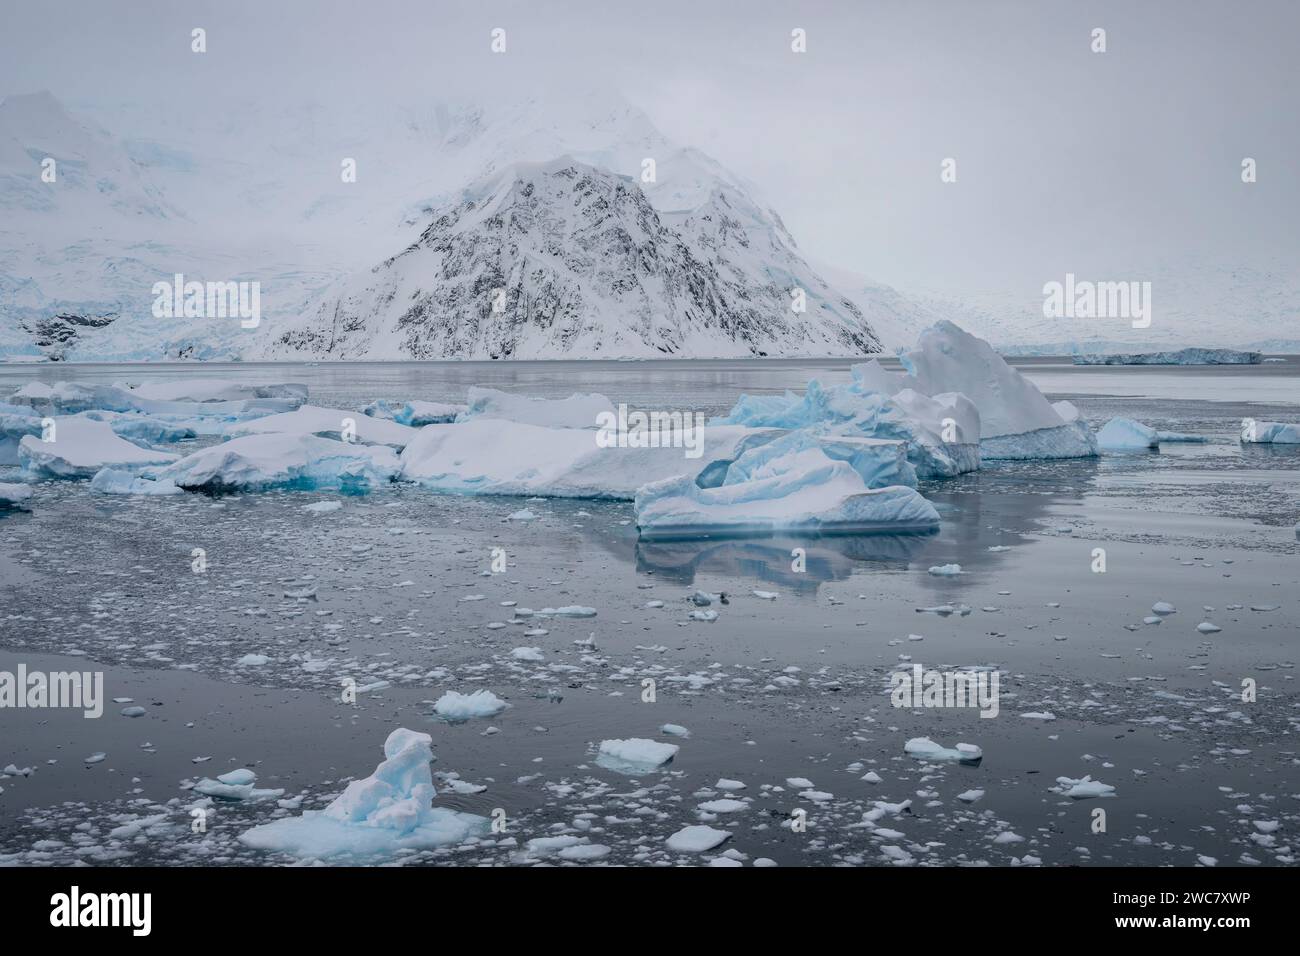 Neko Harbor, Antartide, acqua ghiacciata, iceberg, ghiacciai che distaccano più ghiaccio, colonia di nidificazione per i pinguini di Gentoo, circondata da vette innevate Foto Stock